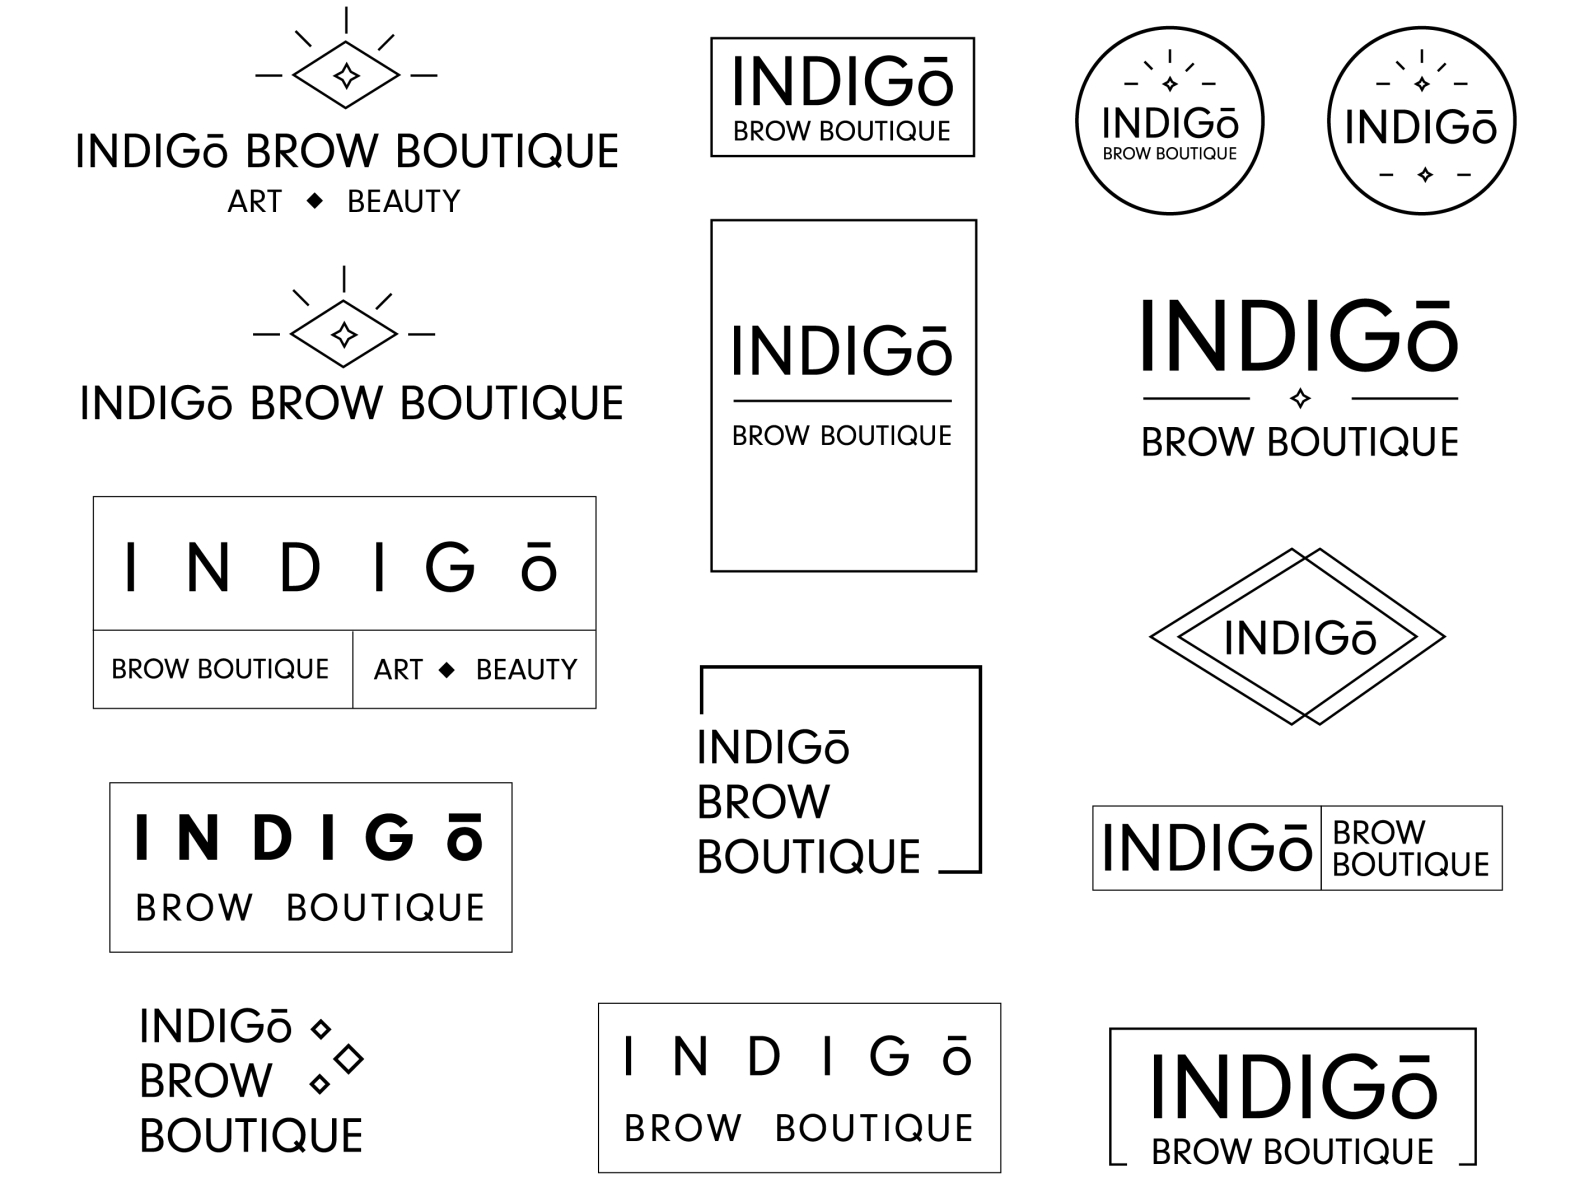 Indigo Brow Boutique Logo Ideas By Toria Karas On Dribbble